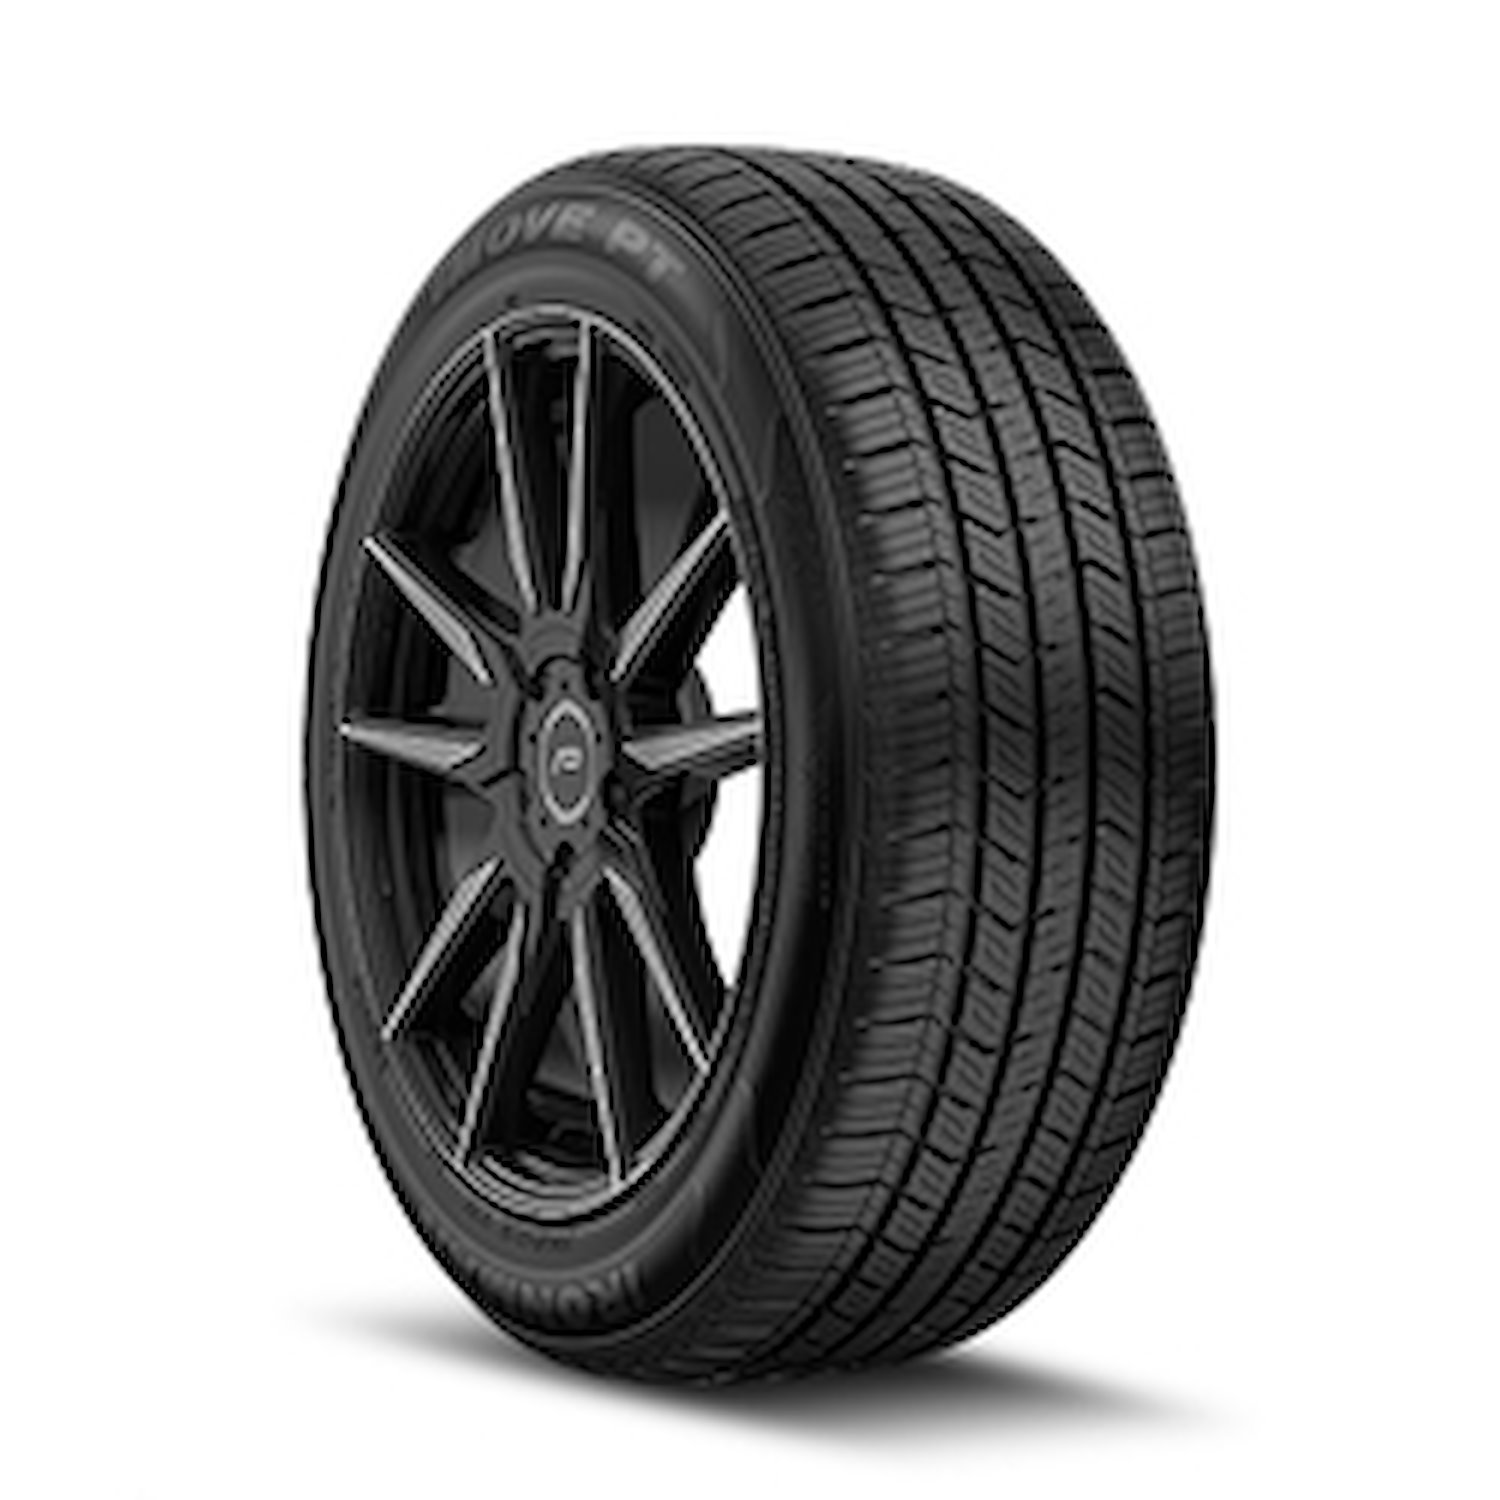 98473 iMOVE PT Tire, 215/60R17, 96H